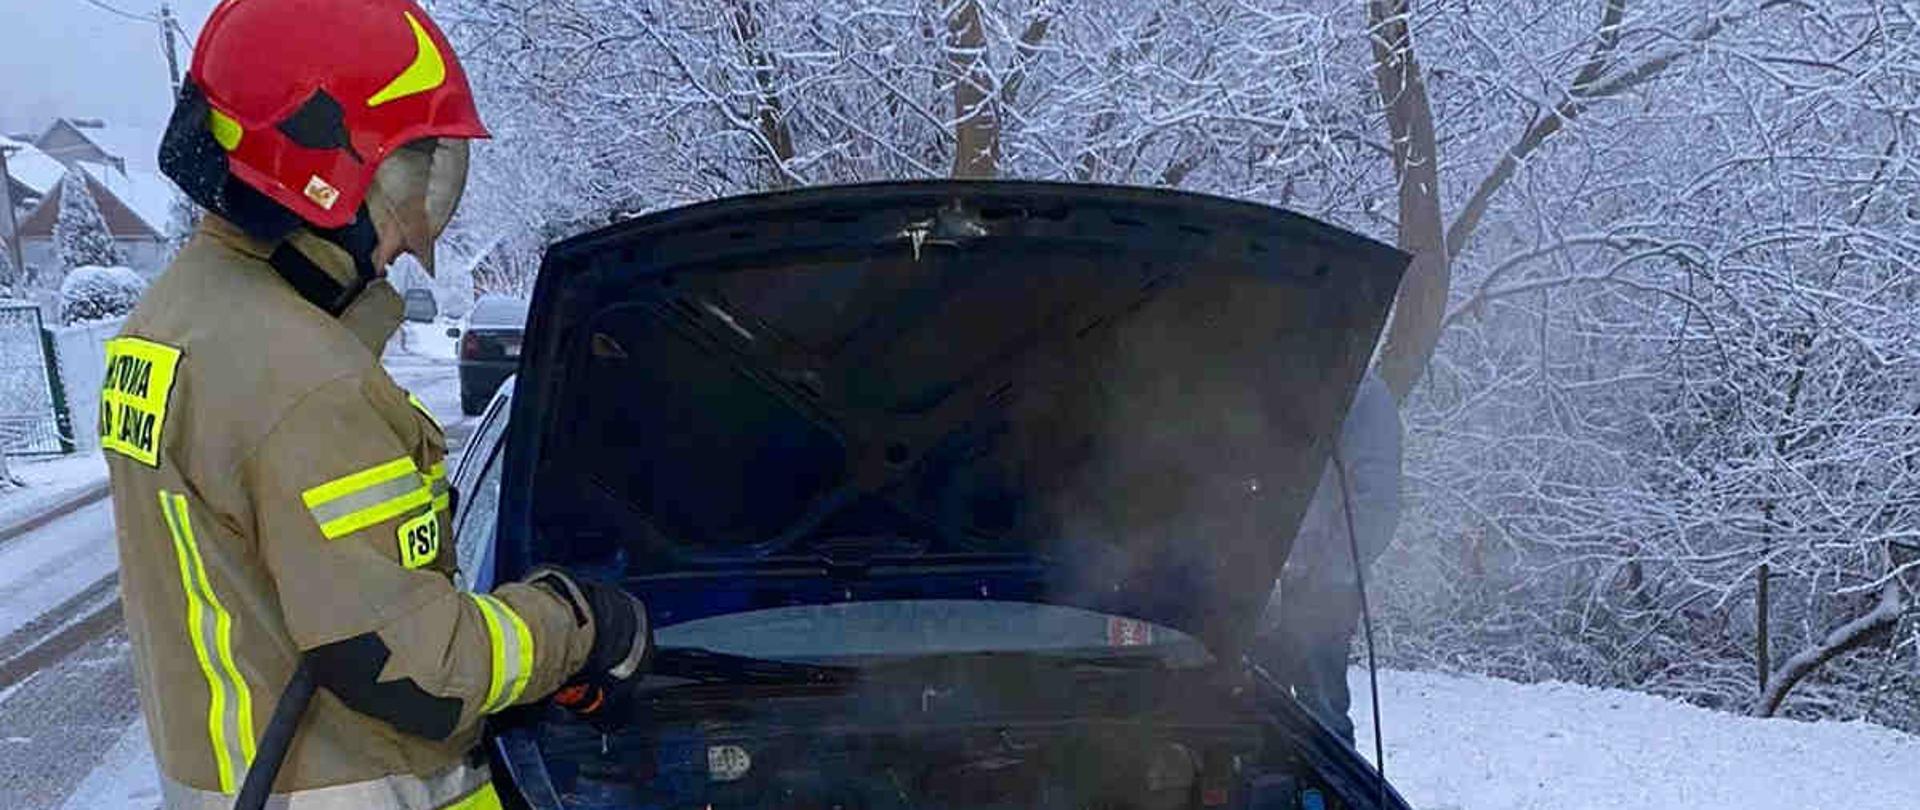 Zdjęcie zrobione w dzień. Na zdjęciu widać strażaka gaszącego samochód osobowy. W oddali widać drzewa pokryte śniegiem. 